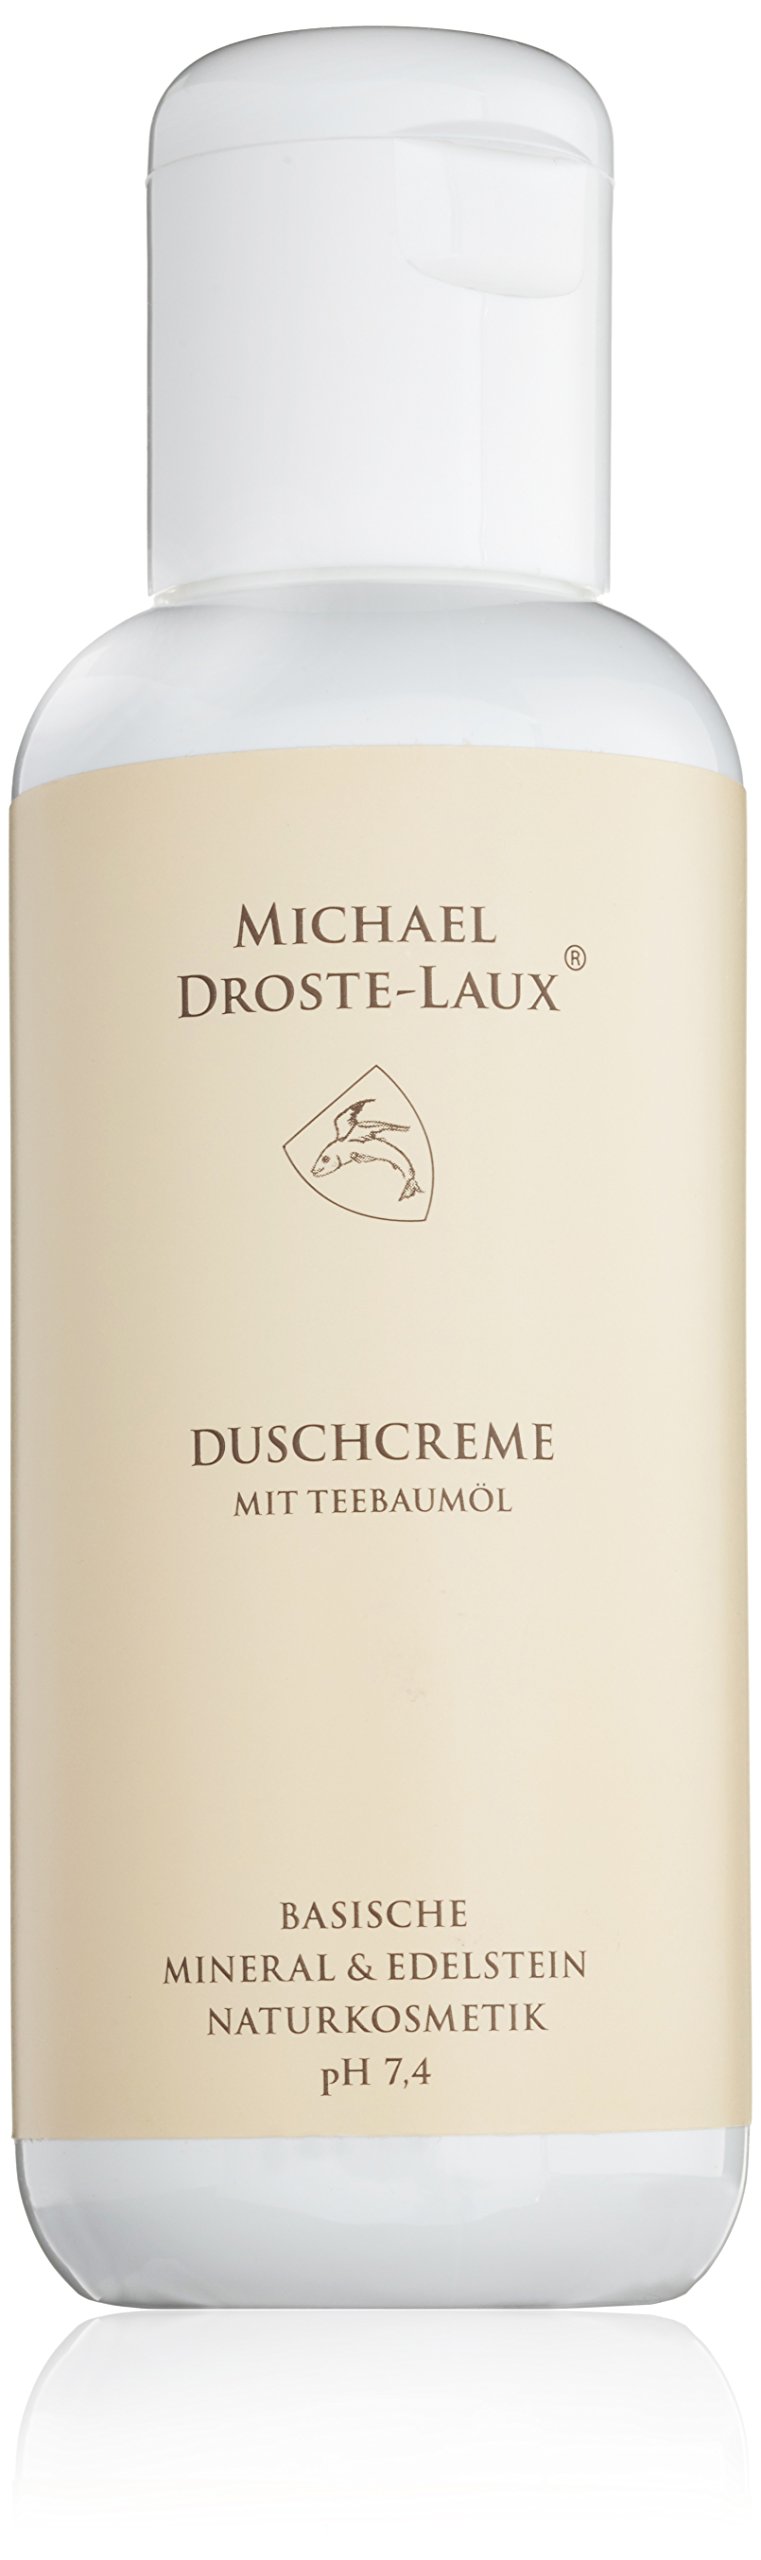 Michael Droste-Laux Naturkosmetik, basische Duschcreme, 200 ml